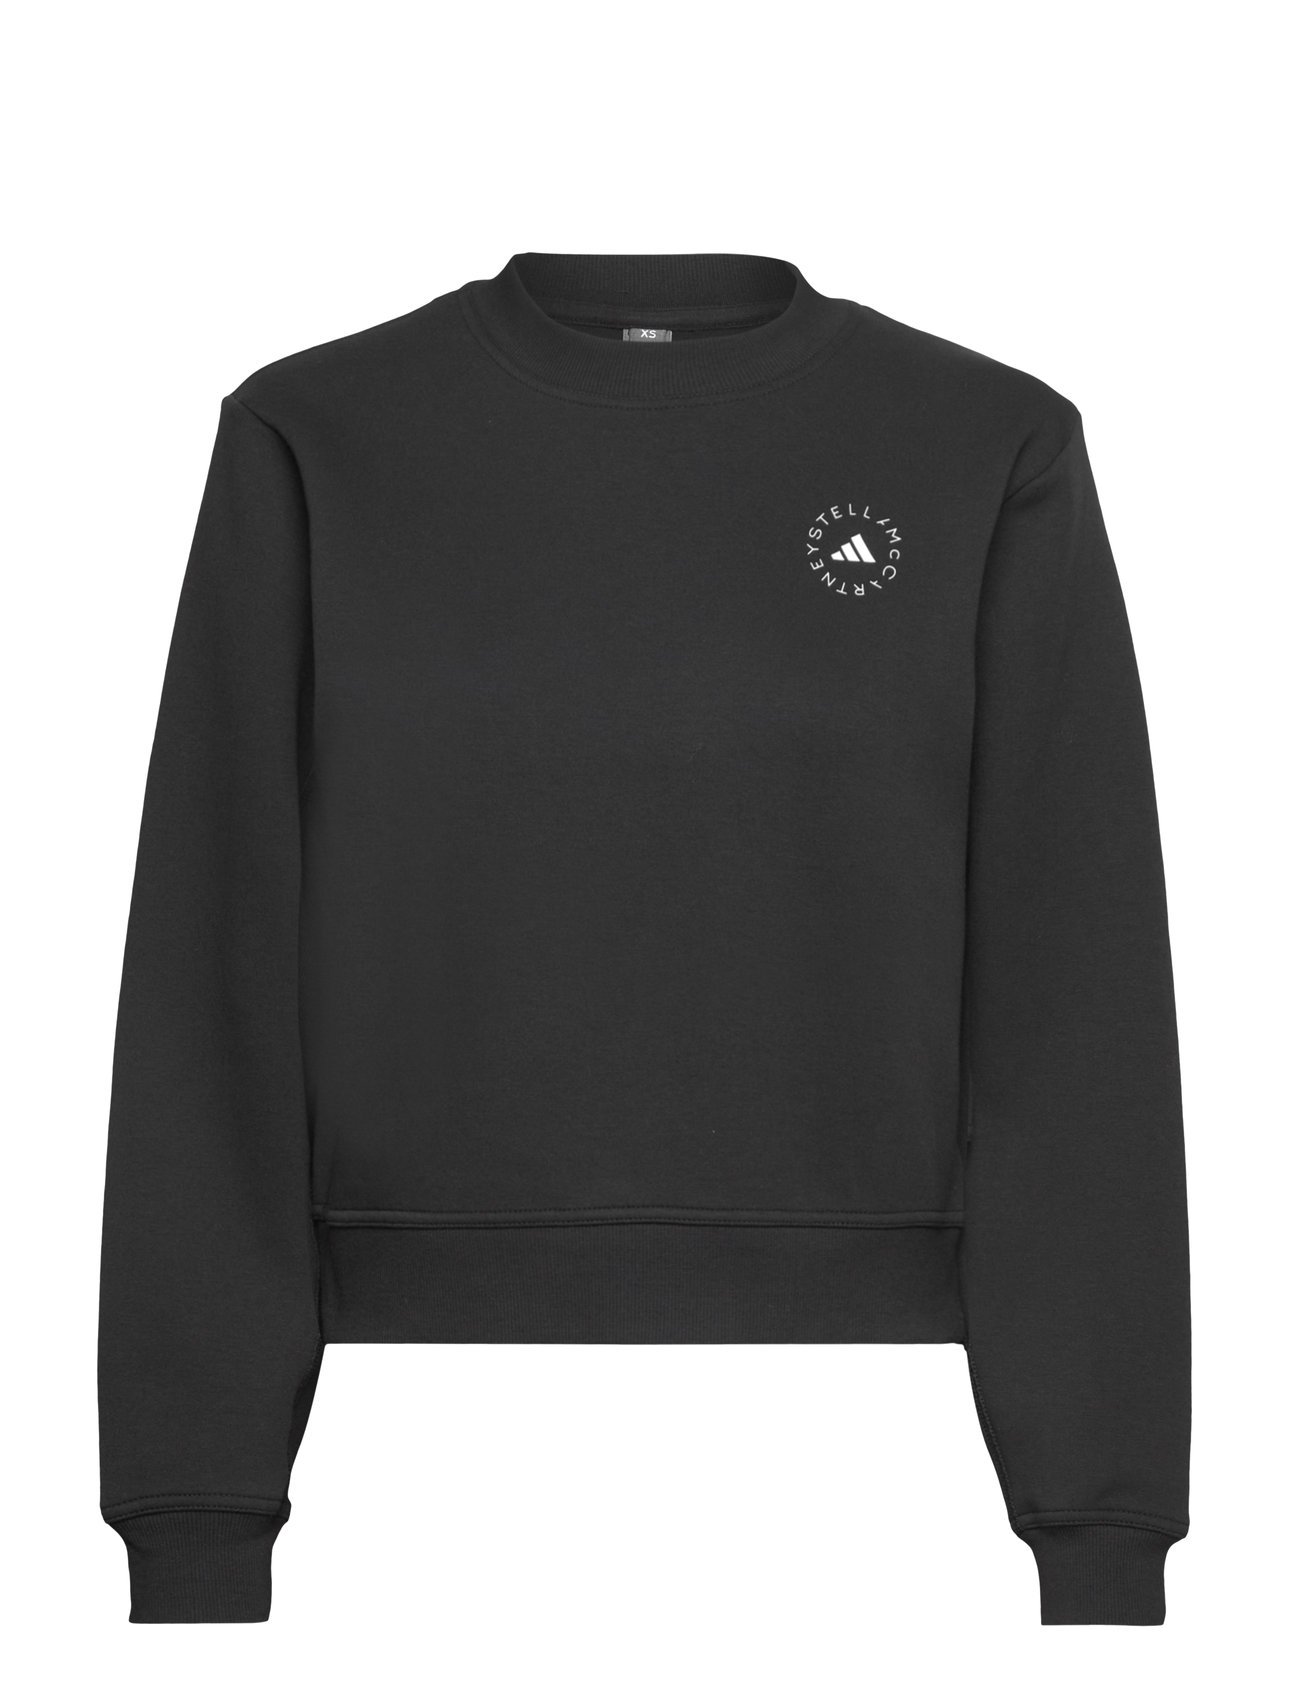 "adidas by Stella McCartney" "Asmc Reg Sw Sh Sport Sweatshirts & Hoodies Black Adidas By